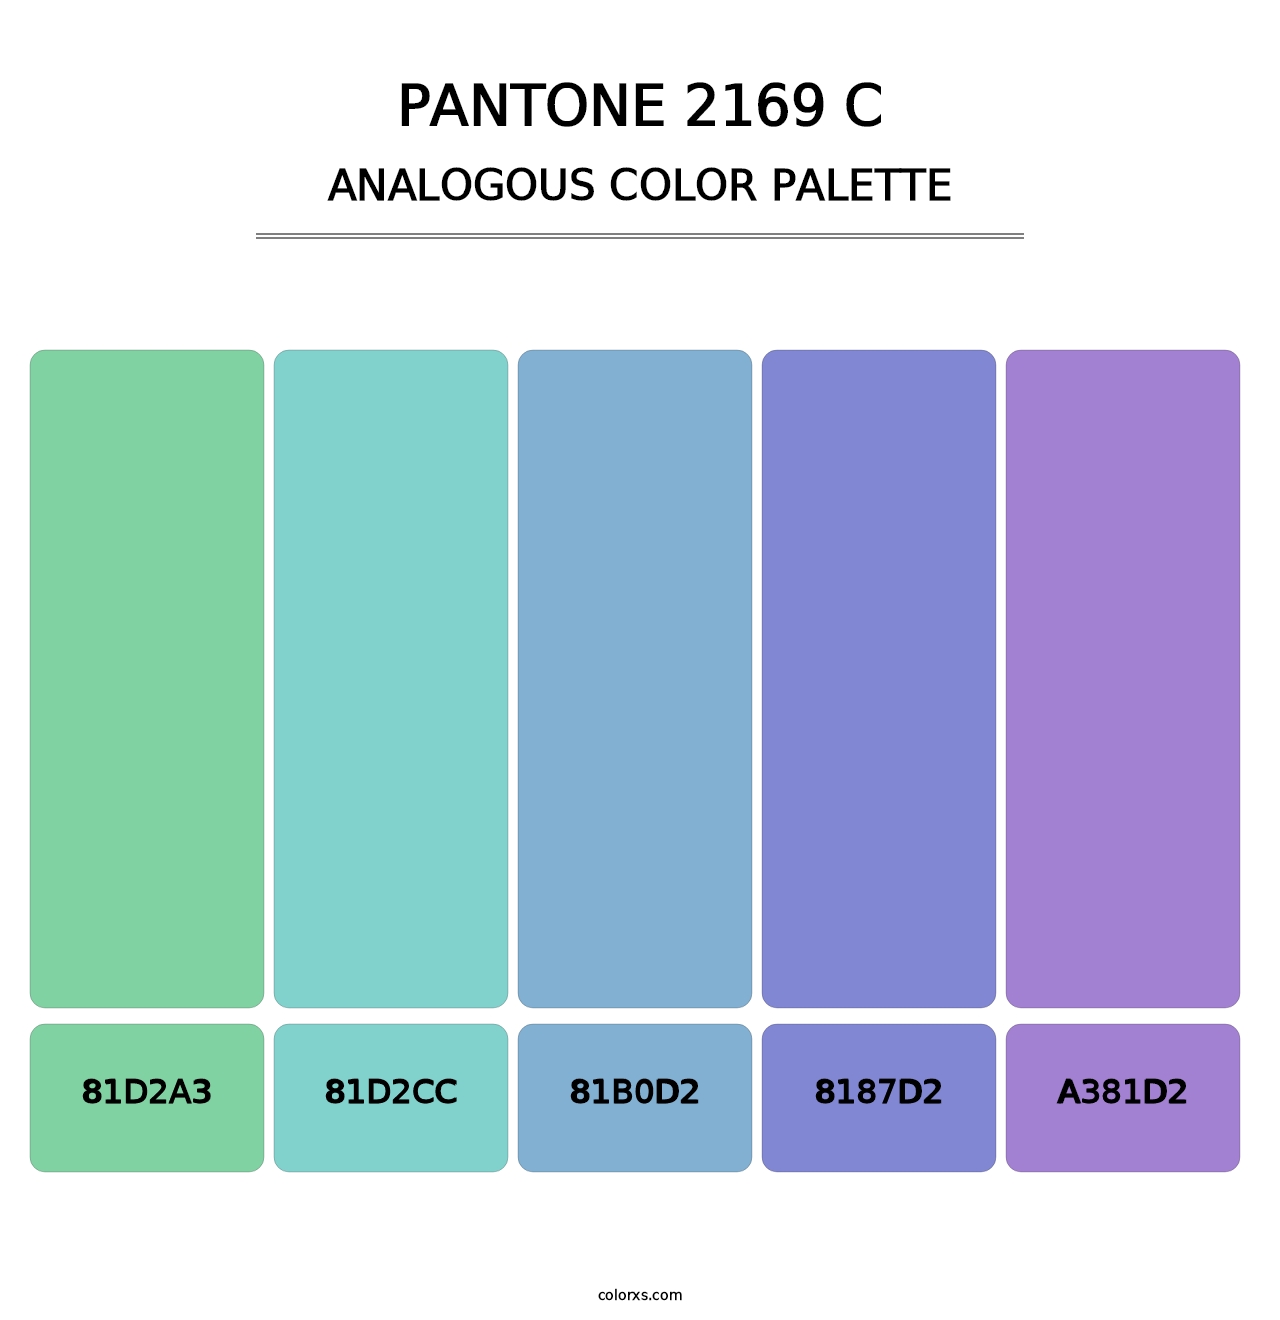 PANTONE 2169 C - Analogous Color Palette